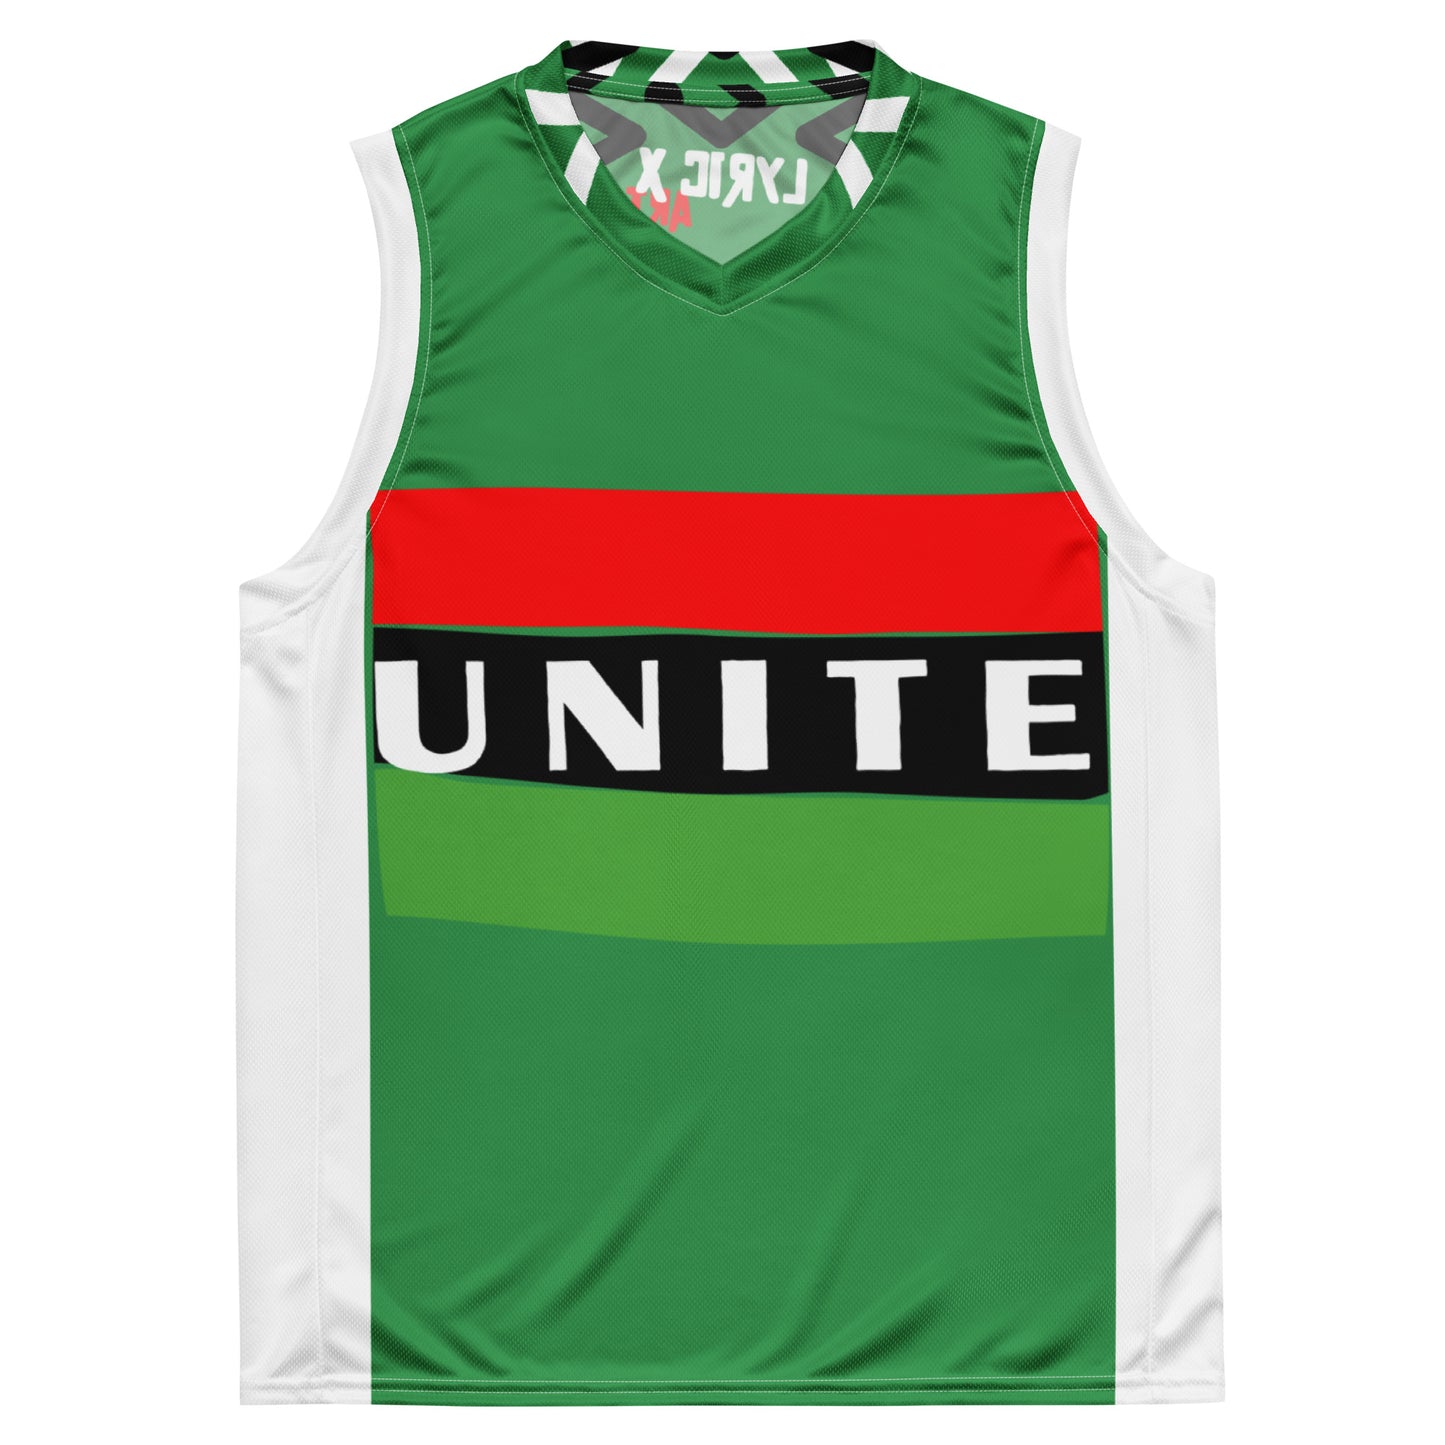 Unite in Green Streetwear Jersey - lyricxart